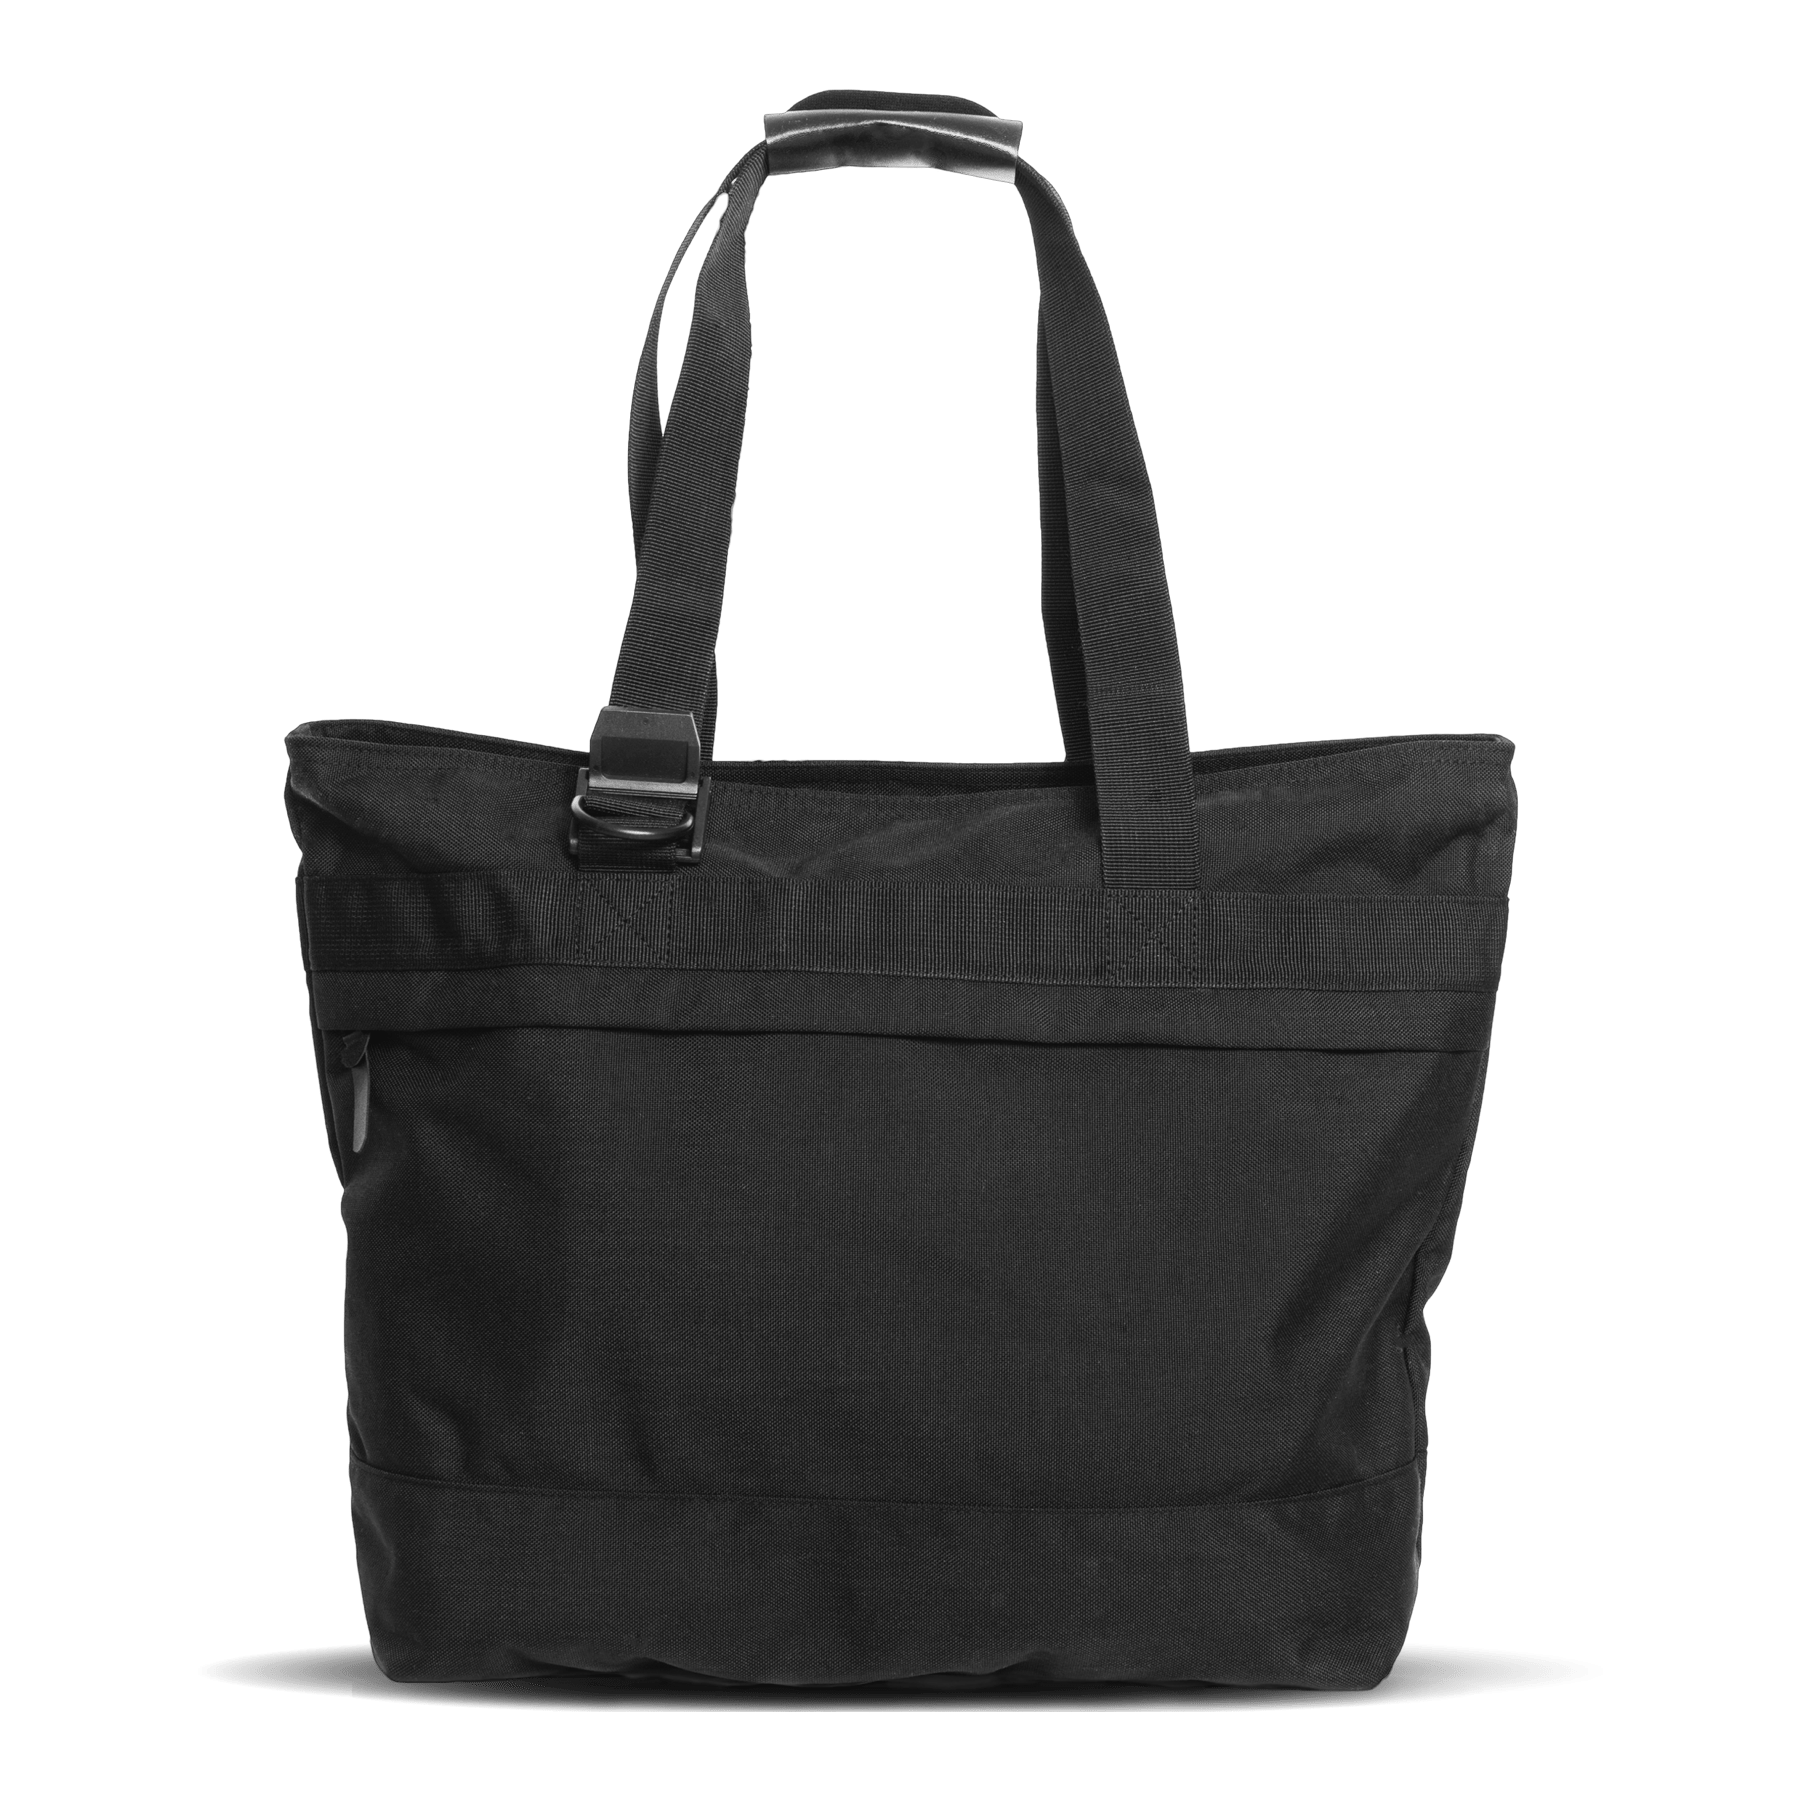 commuter-mens-tote-bag-in-black-pockets